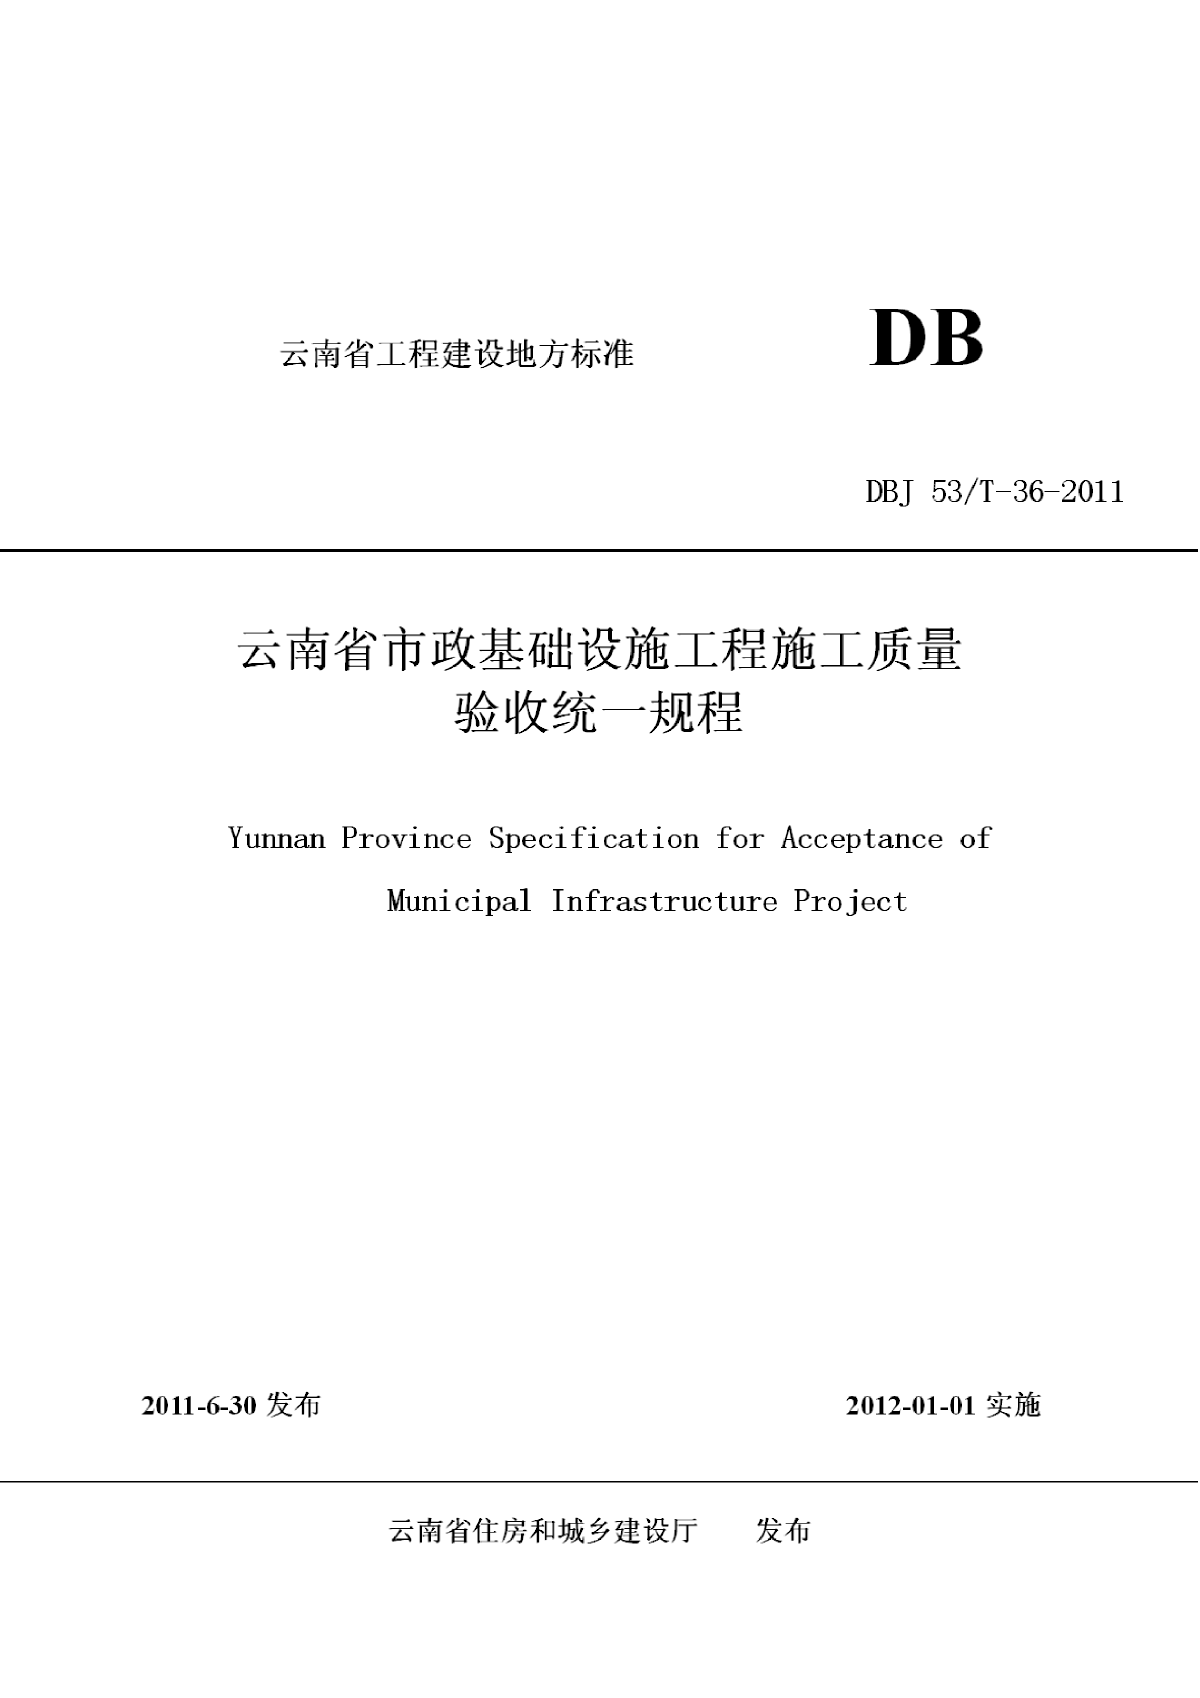 DBJ53T-36-2011 云南省市政基础设施工程施工质量验收统一规程